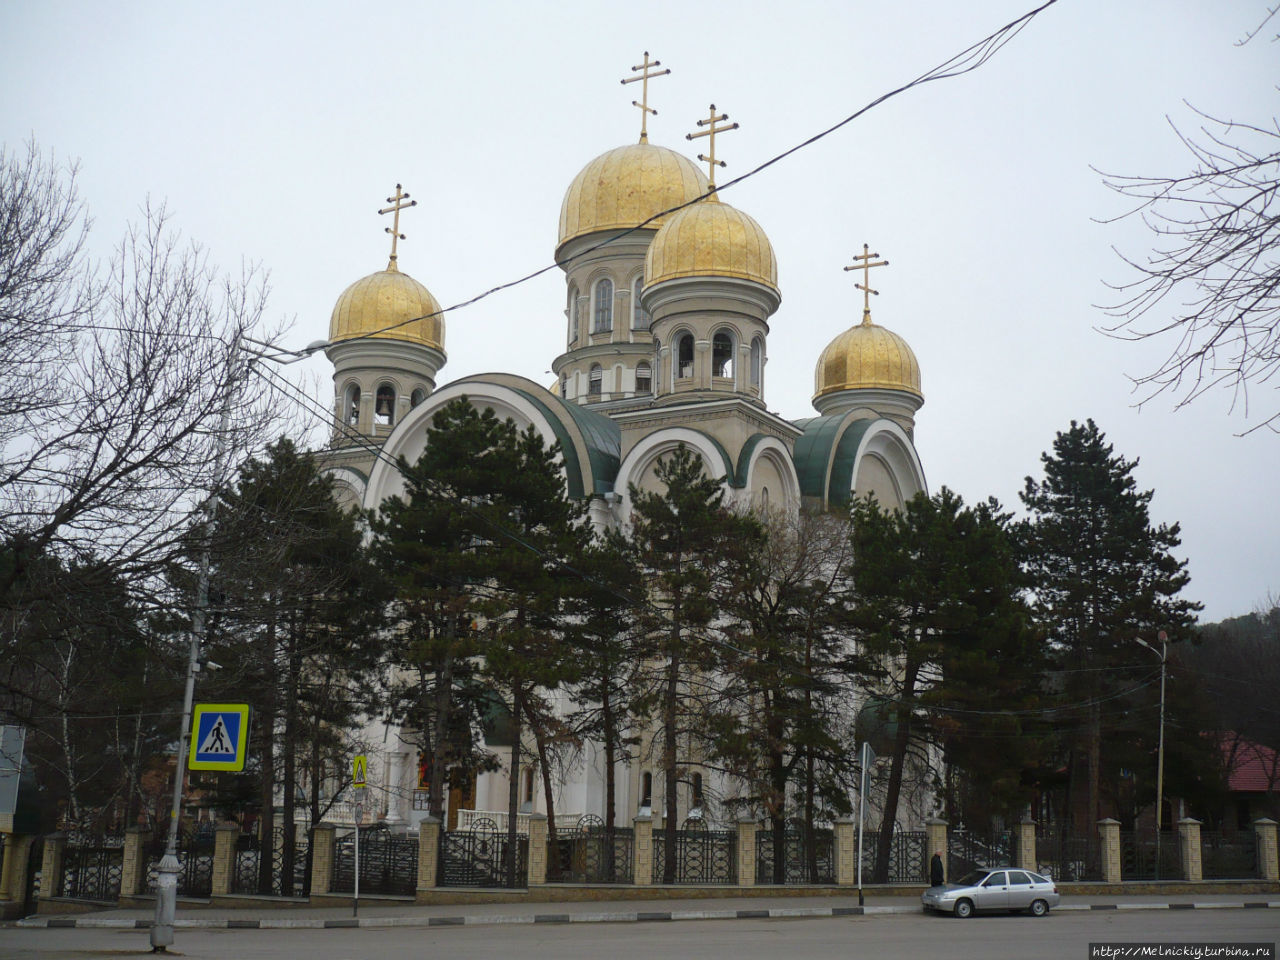 Свято-Никольский собор / Svyato-Nikolsky Cathedral